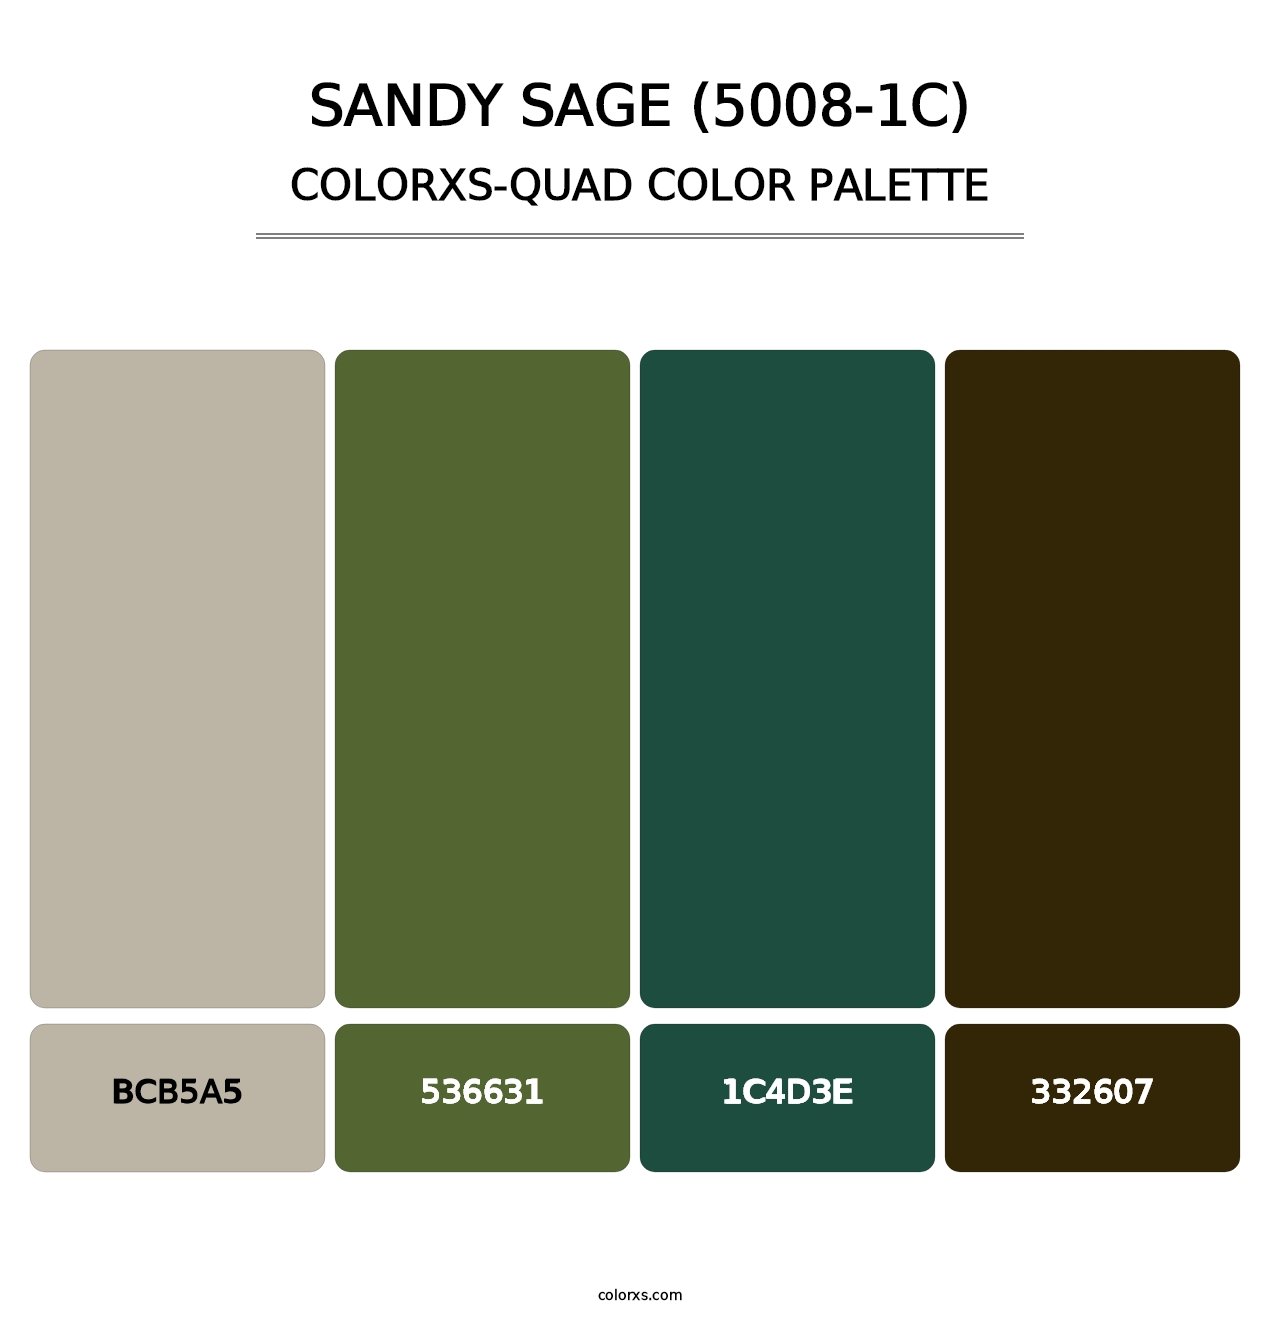 Sandy Sage (5008-1C) - Colorxs Quad Palette